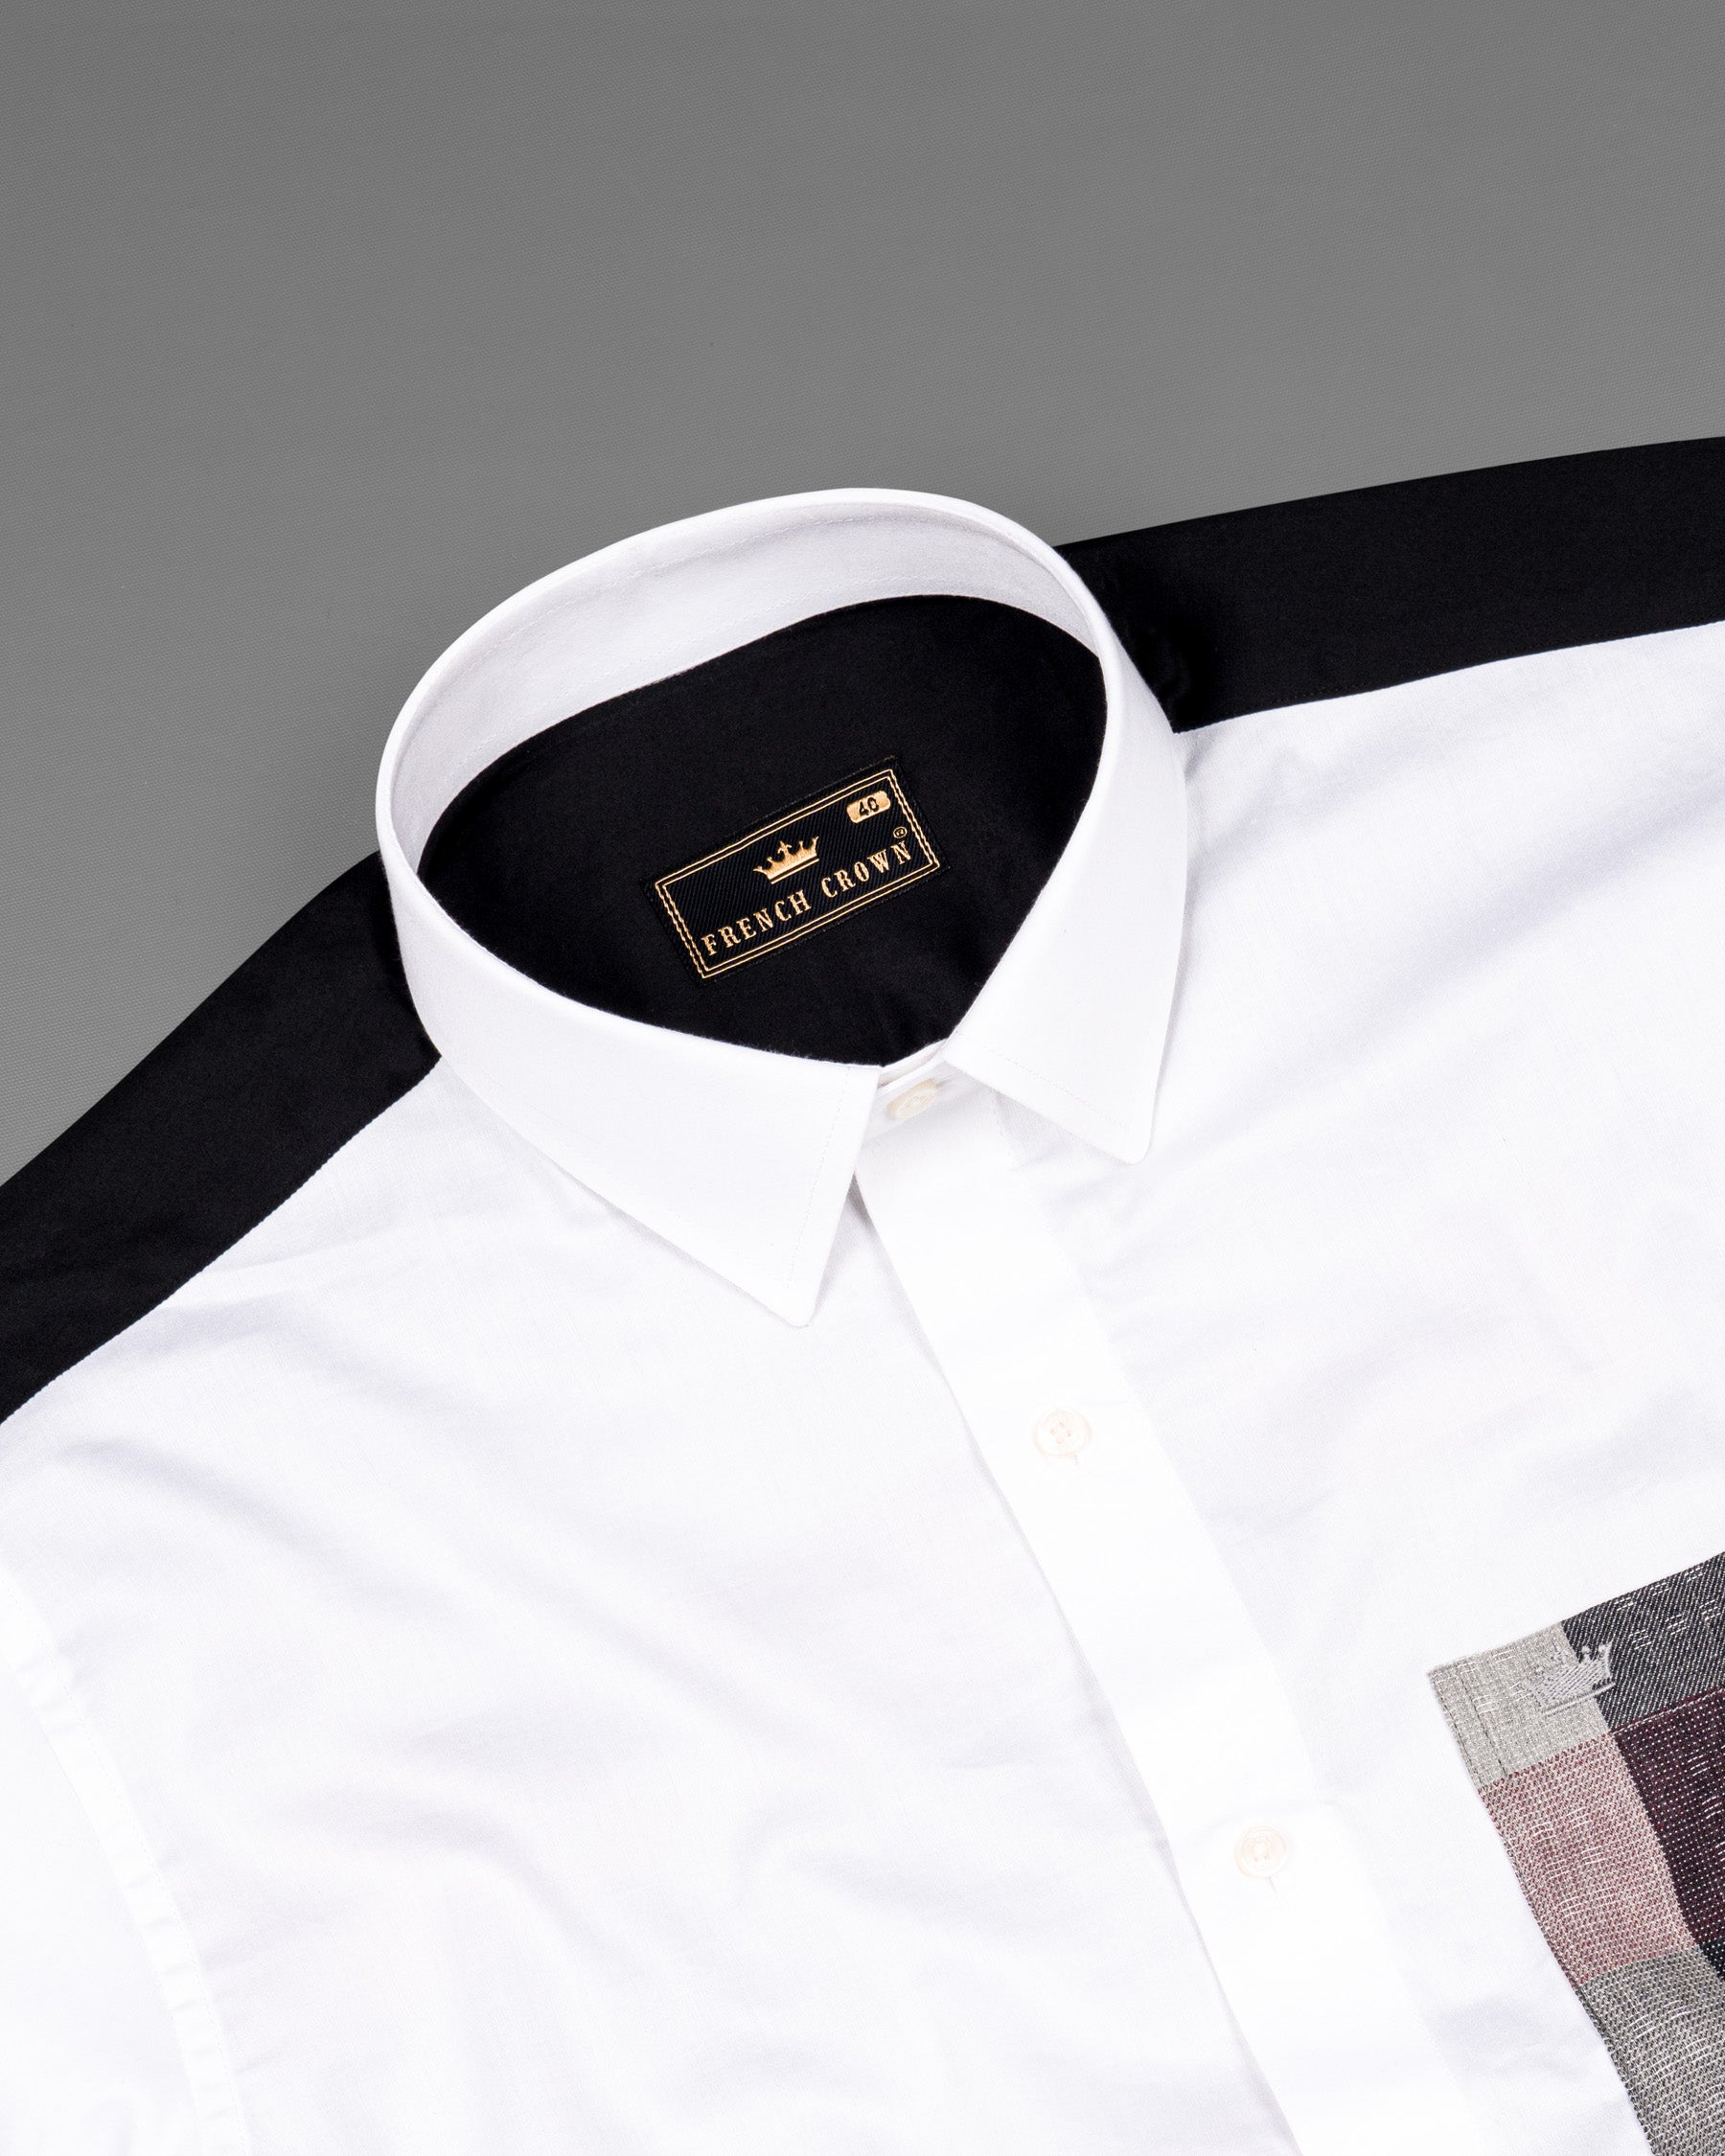 Bright White with Black Checkered Super Soft Premium Cotton Shirt